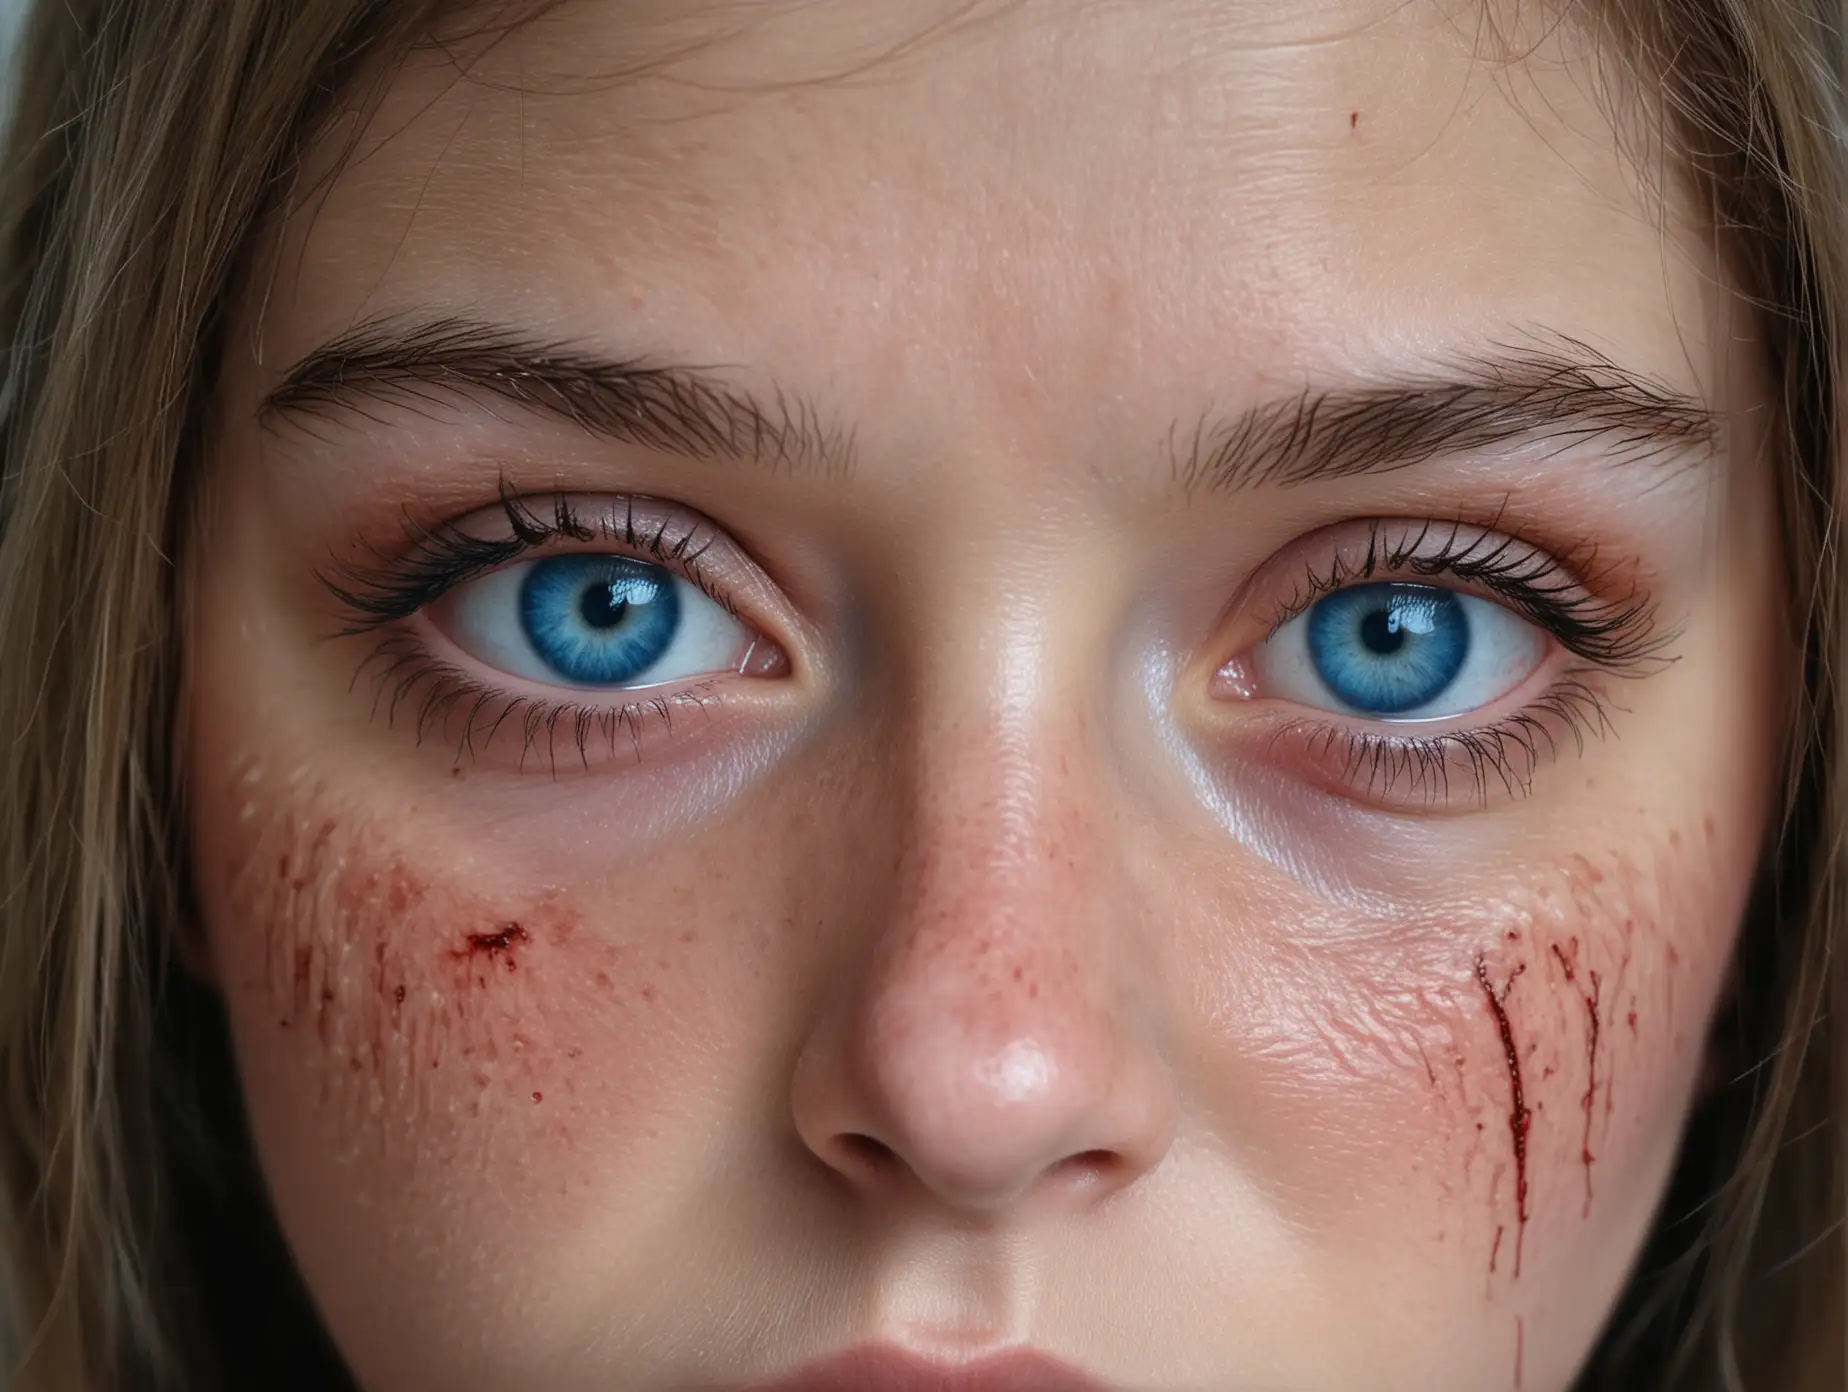 Крупный план, напряженный взгляд голубых глаз девушки, девушка уставшая с подтёками крови на коже 